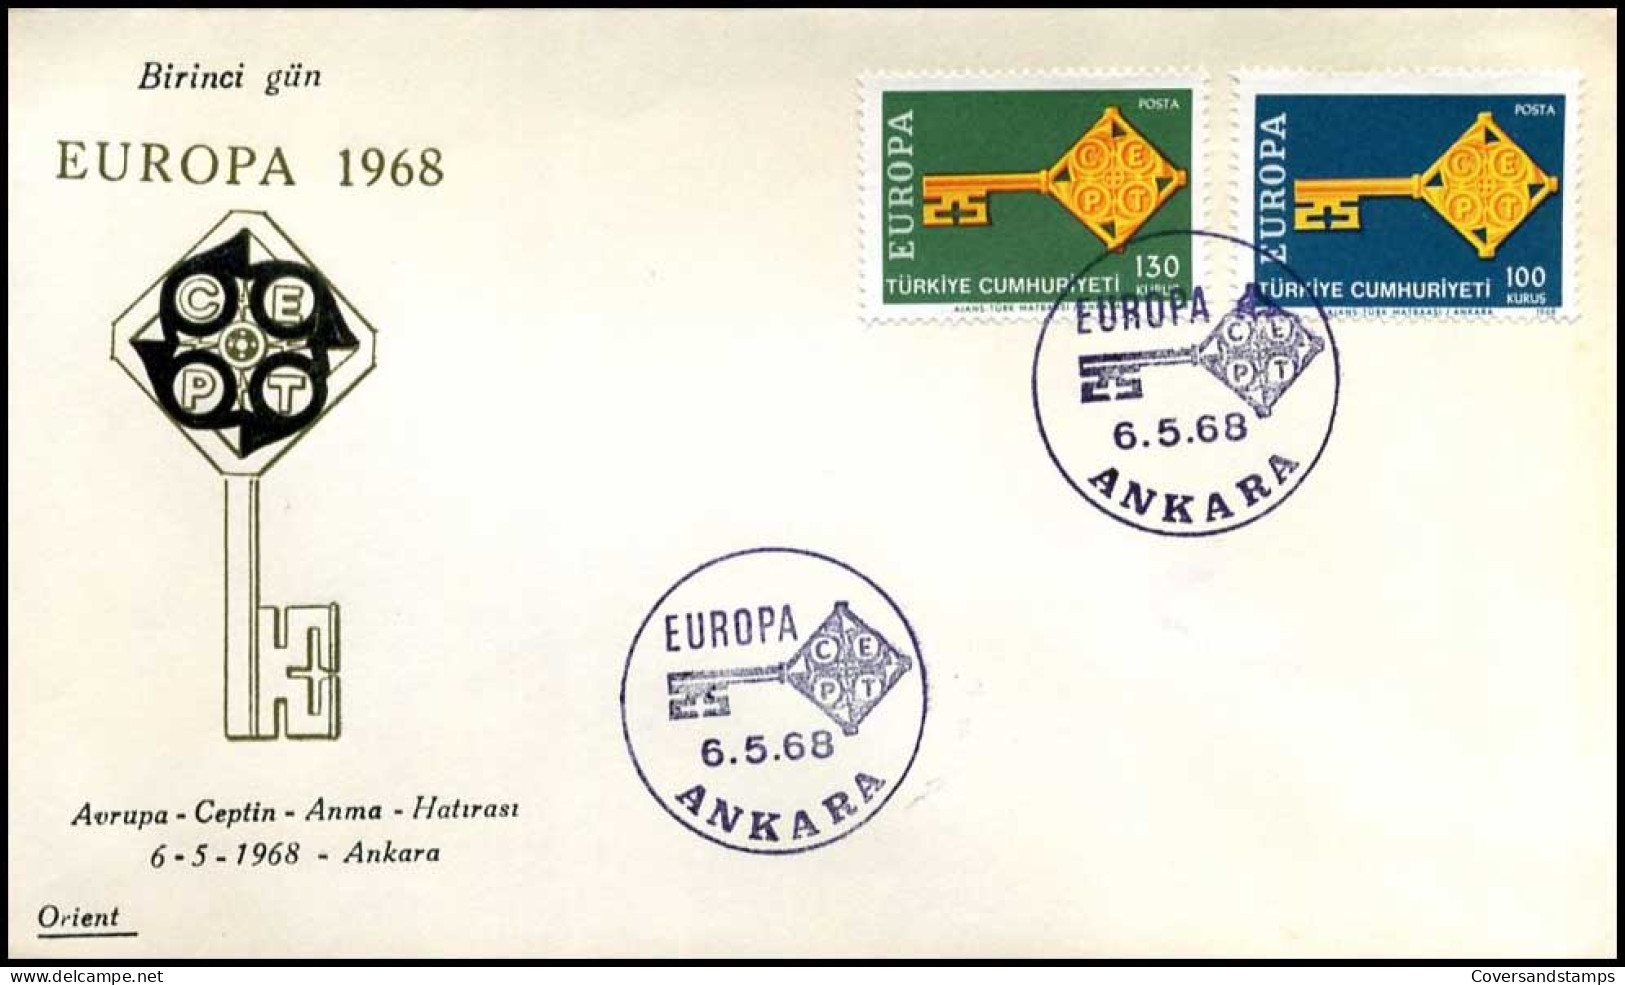  Turkije  - FDC - Europa CEPT 1968 - 1968